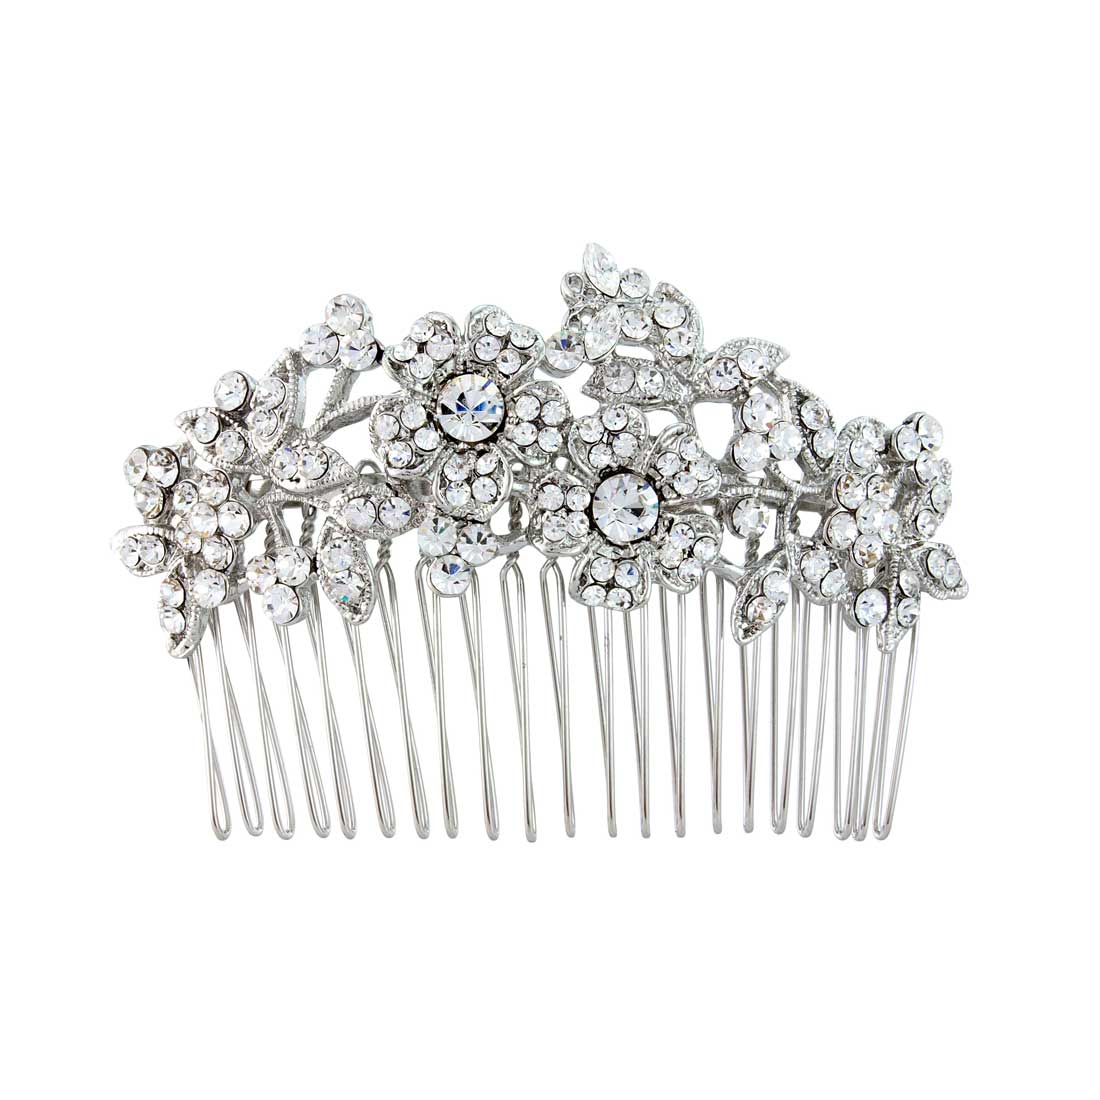 Vintage Posy Floral Crystal Silver Wedding Hair Comb for Brides & Bridesmaids